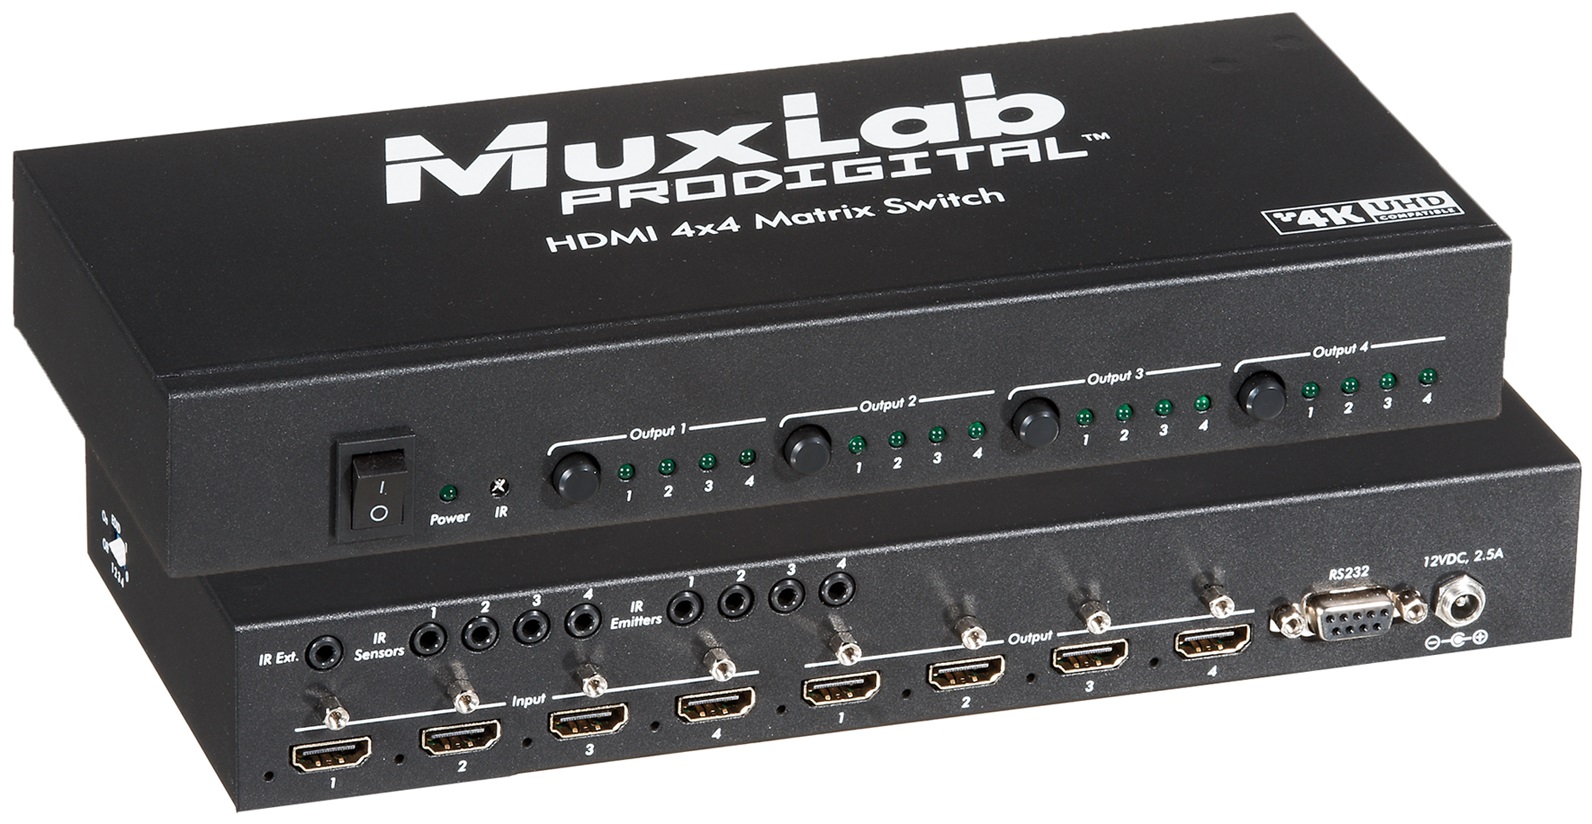 Valle Propuesta Pendiente HDMI 4x4 Matrix Switch UHD-4K - Muxlab